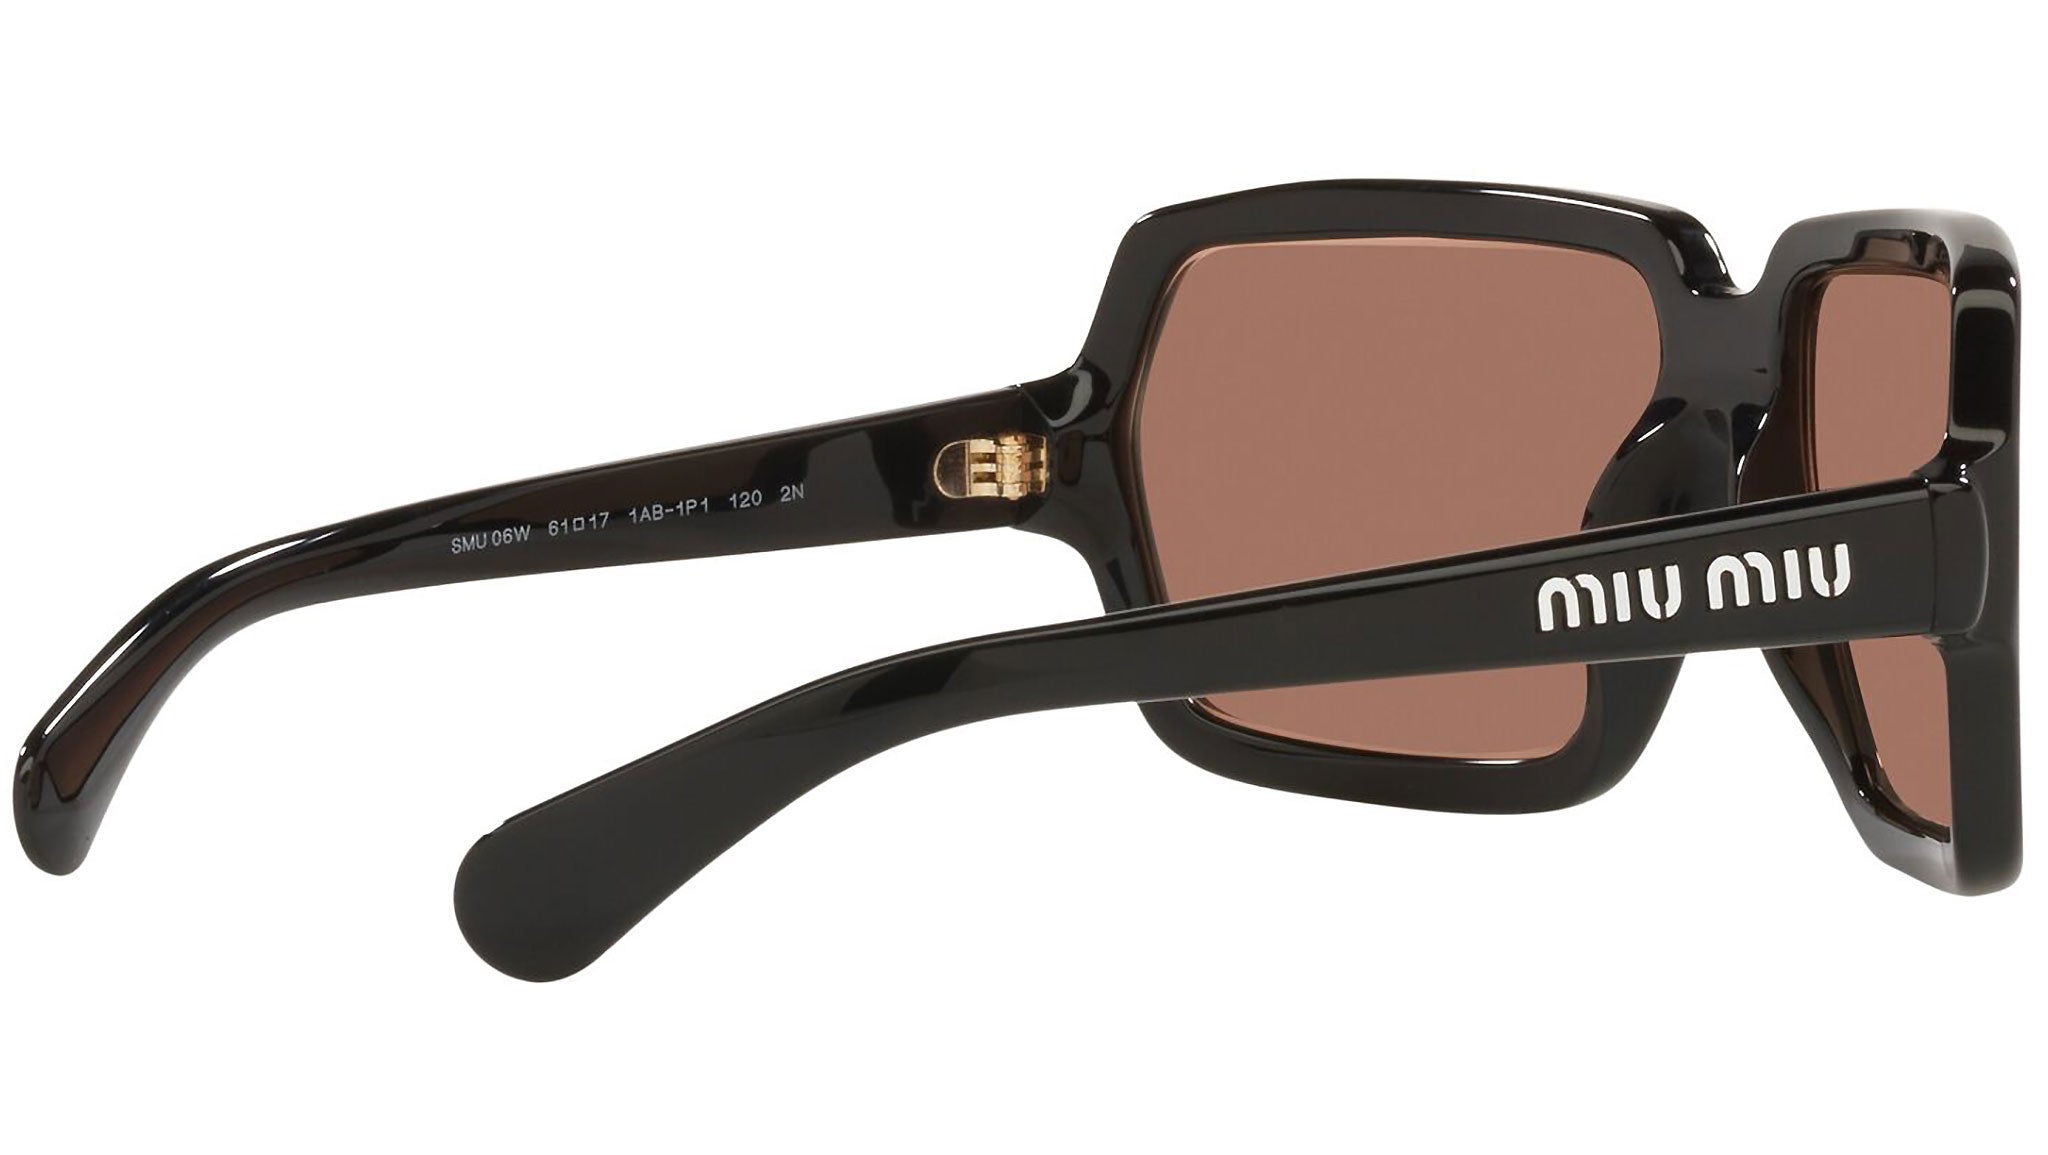 Miu Miu MU 06WS Sunglasses 1AB1P1 Black